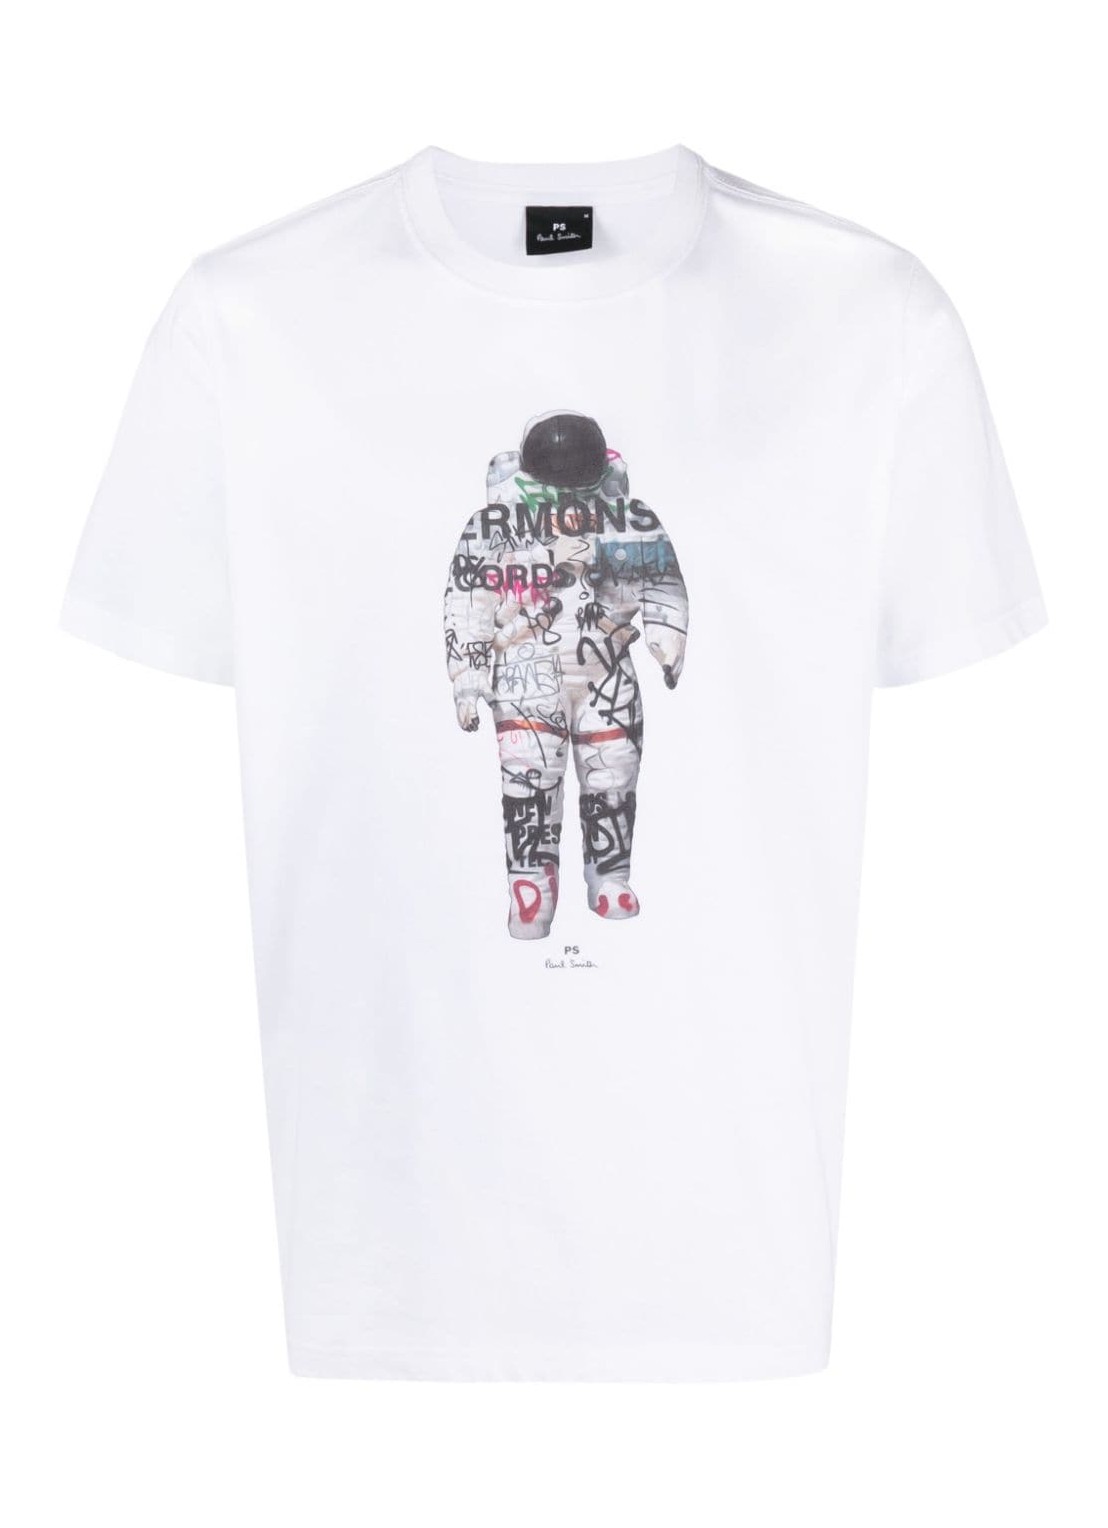 Camiseta ps t-shirt man mens reg fit t shirt astronaut m2r011rmp4445 01 talla L
 